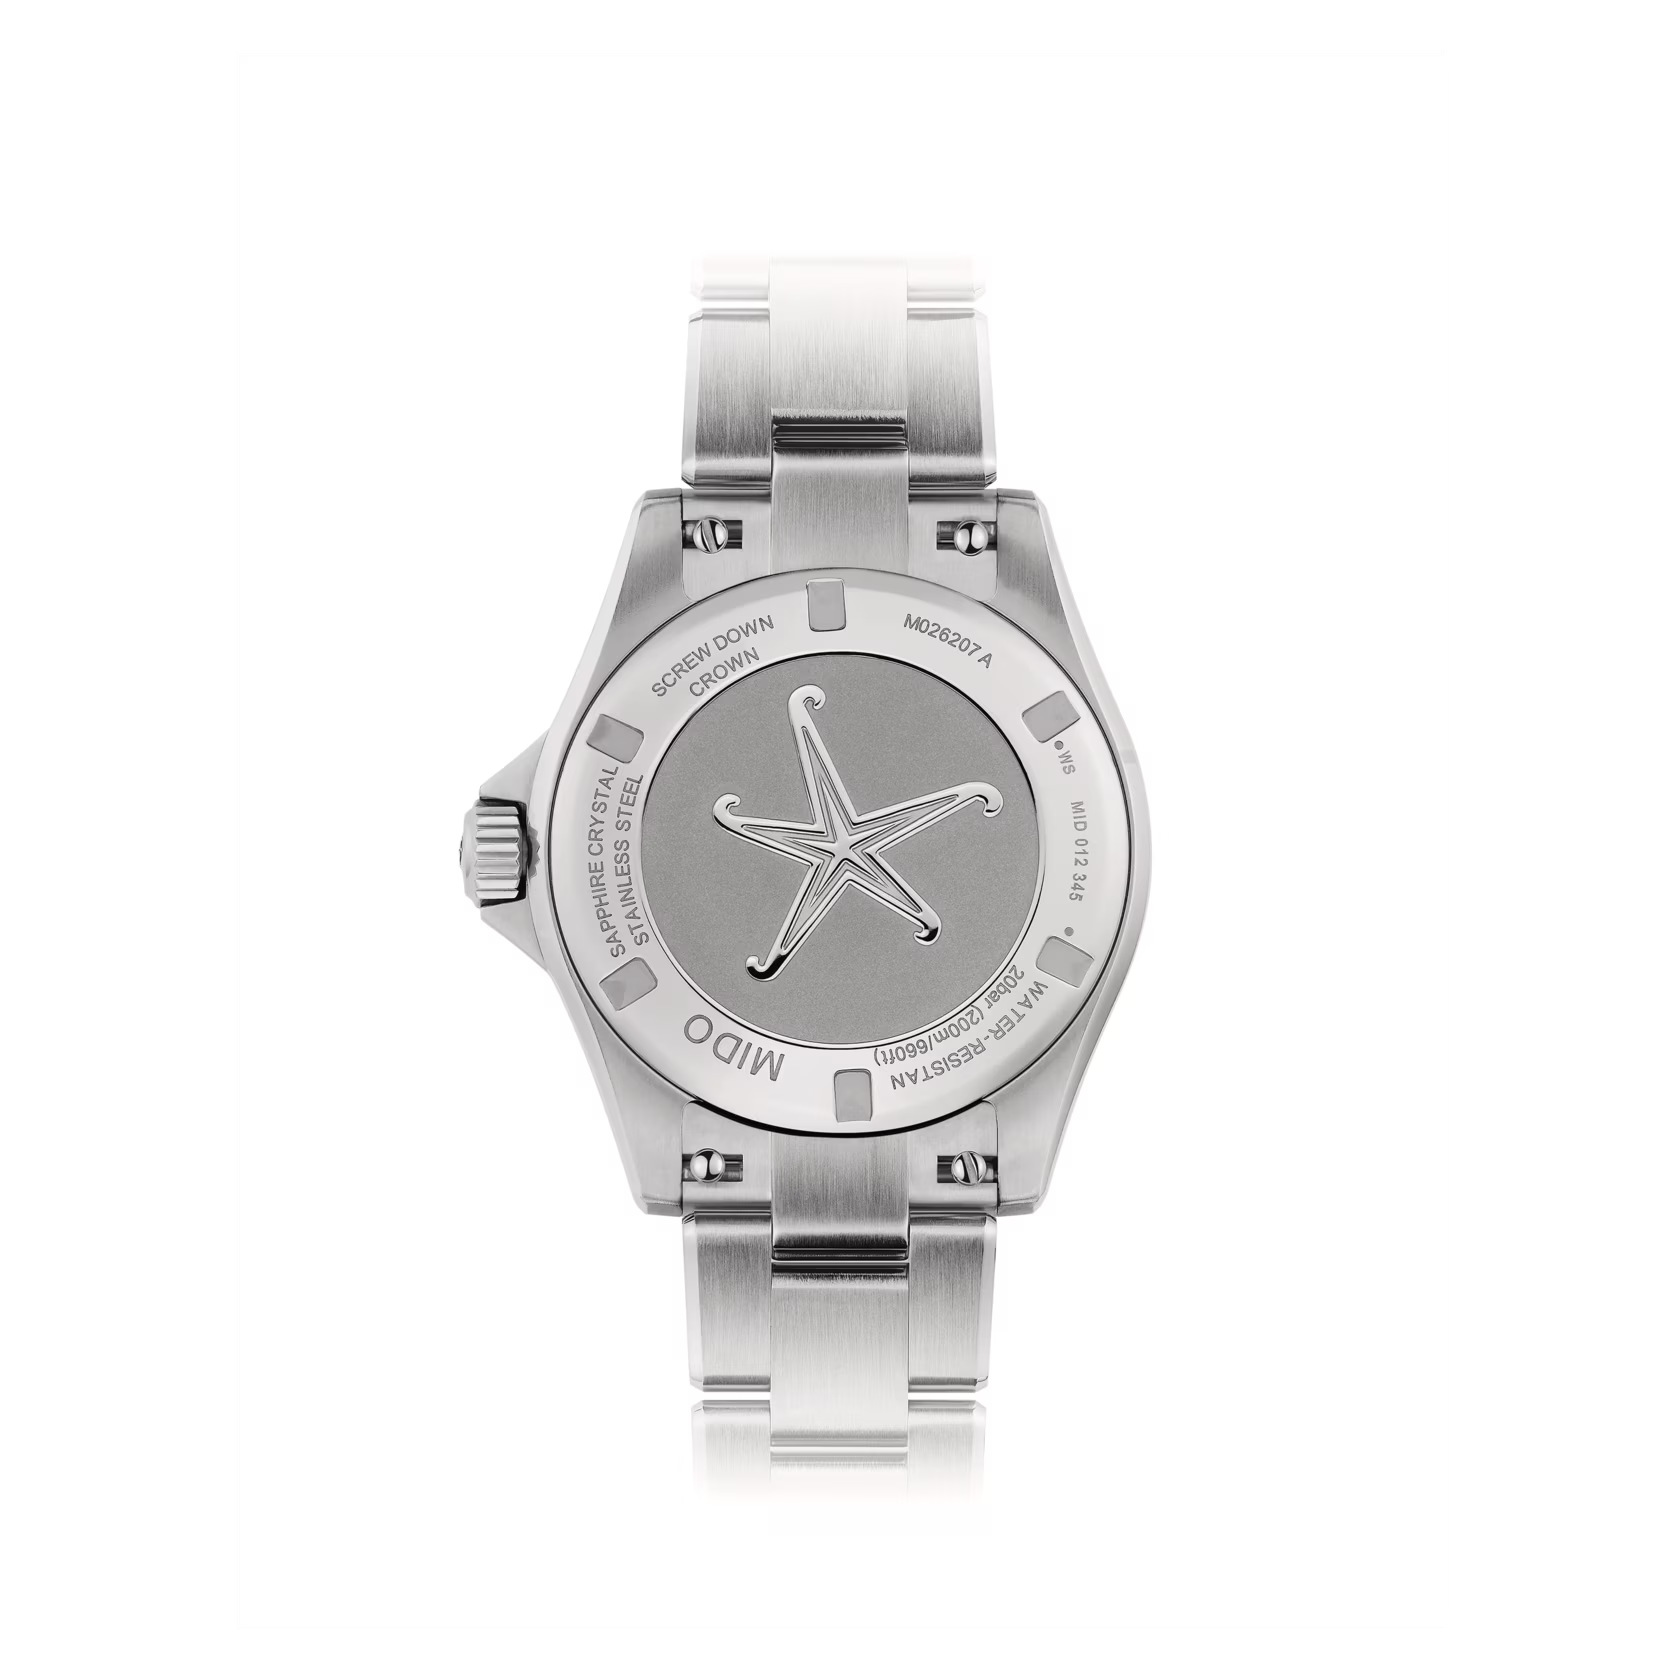 Mido Ocean Star 36.5 M026.207.11.041.00 - Gioielleria Casavola di Noci - orologio automatico svizzero da donna con cassa in acciaio INOX